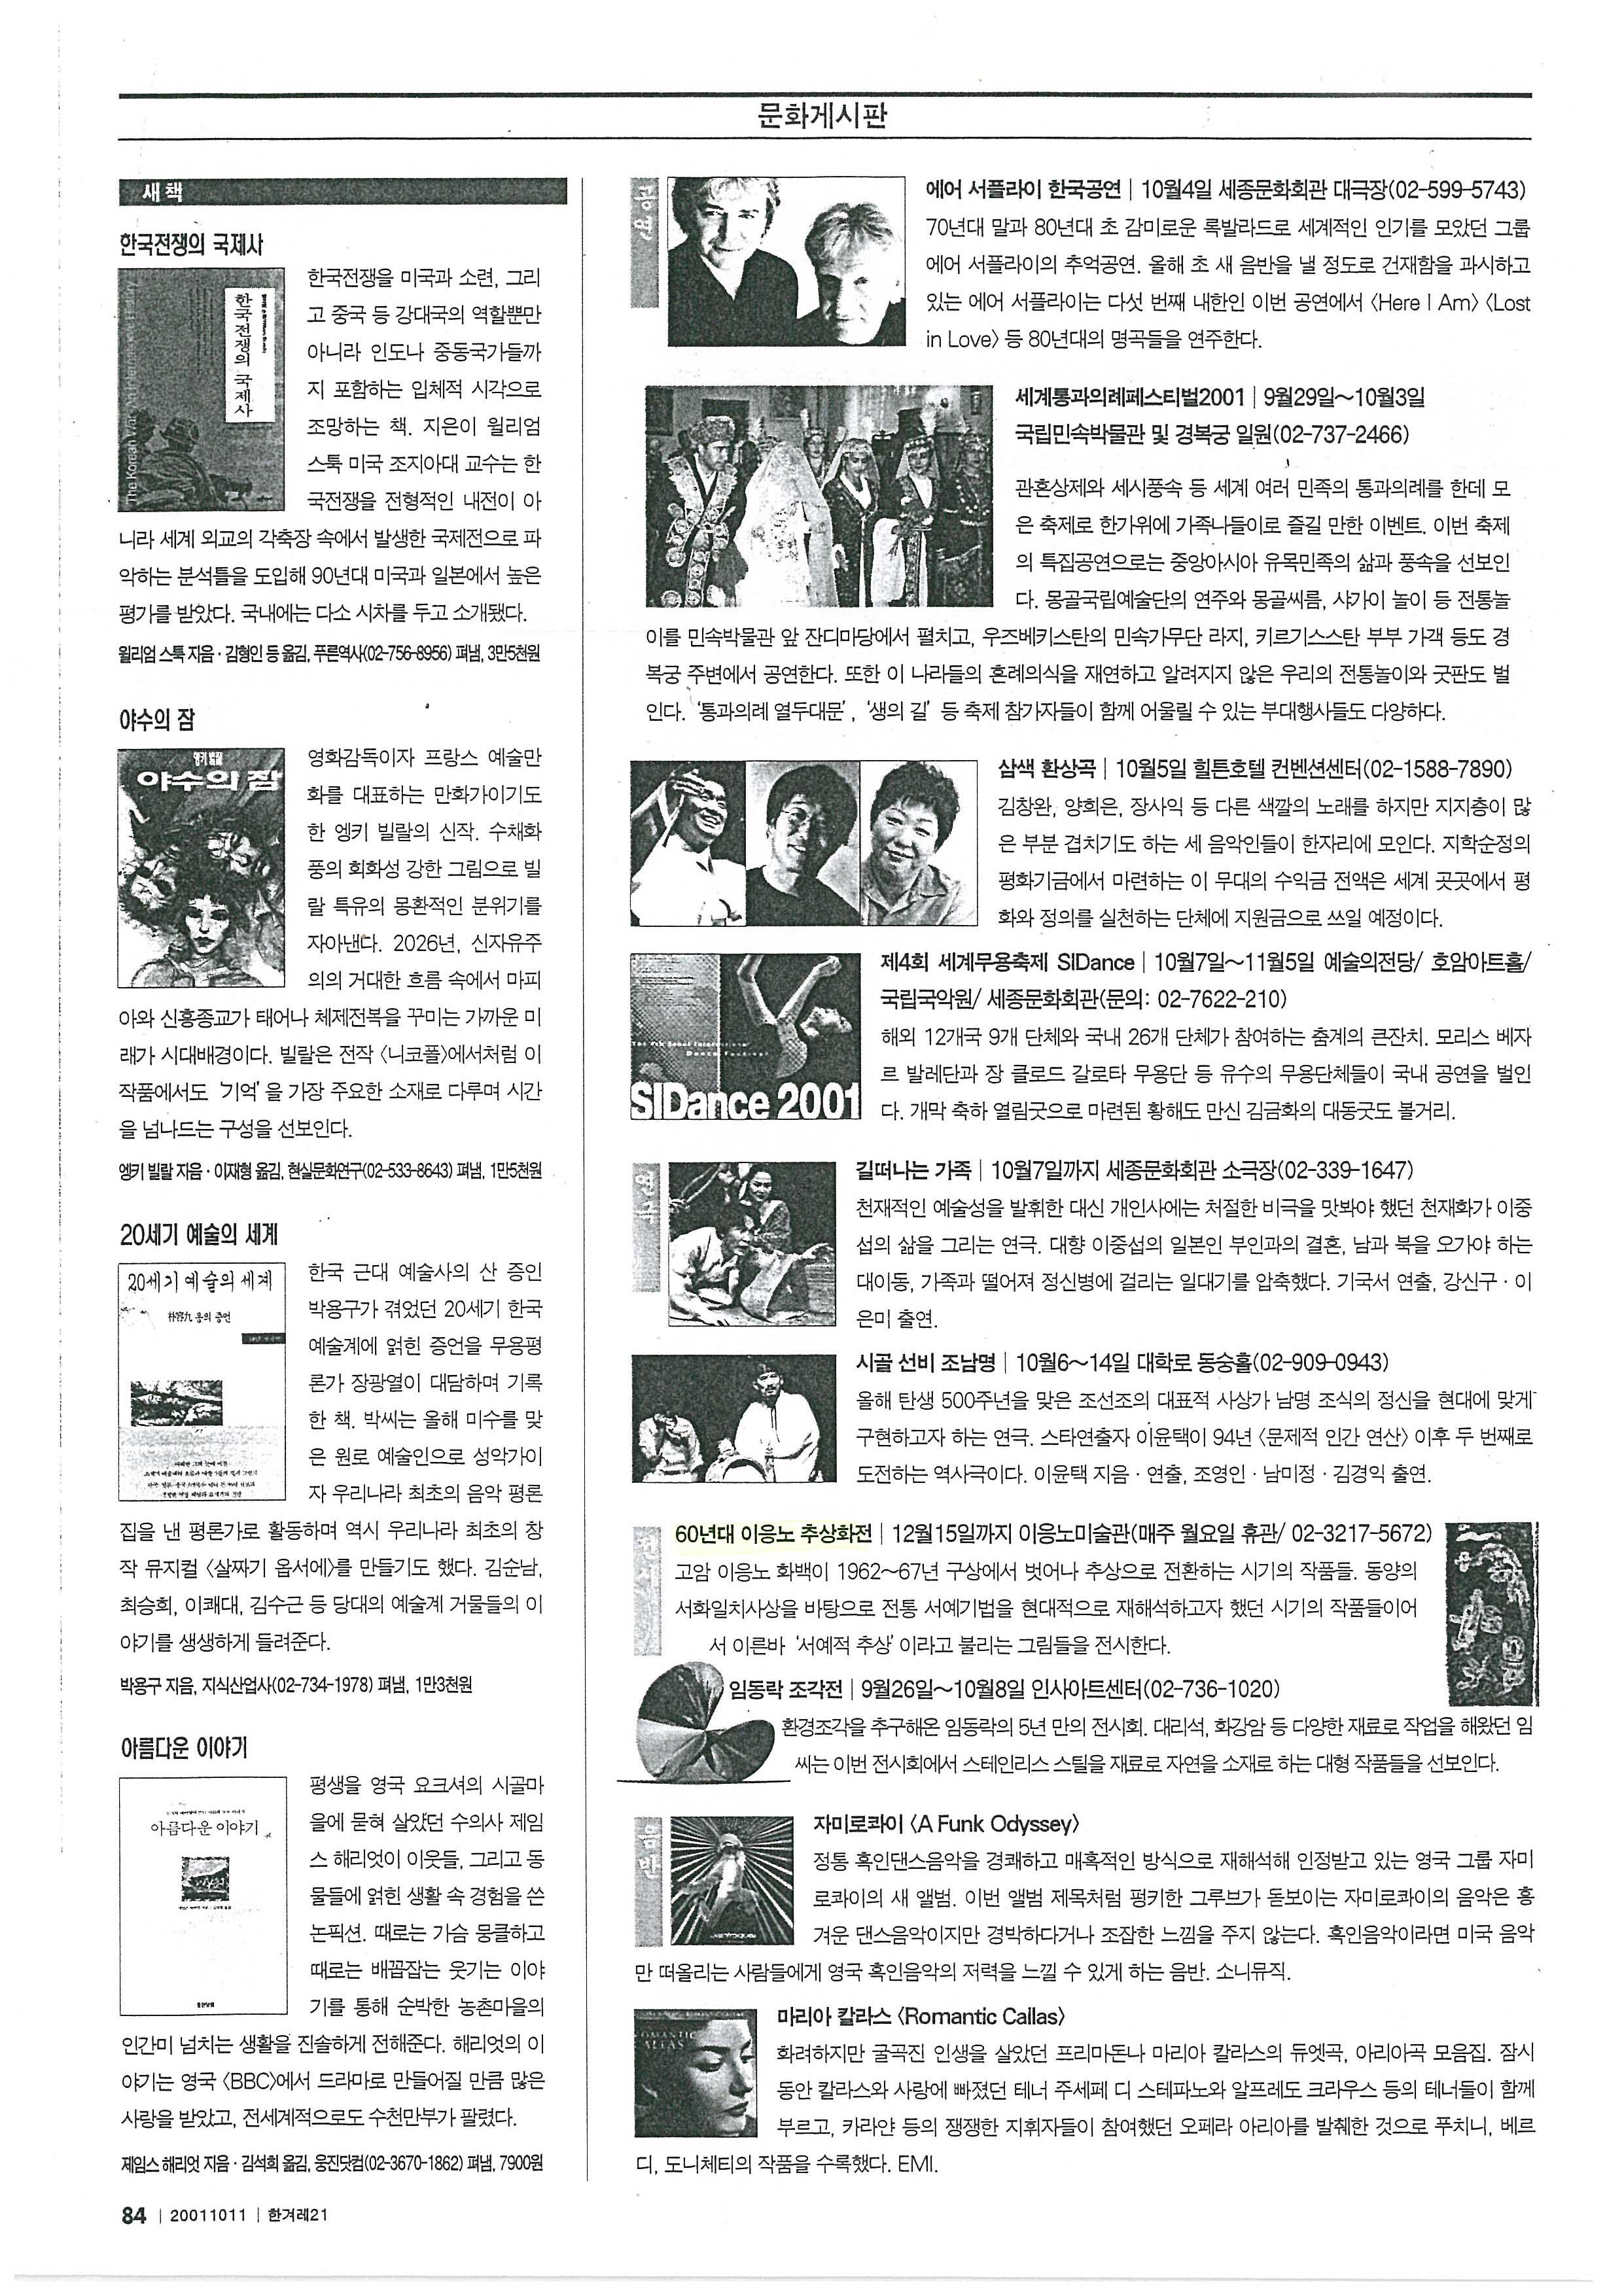  「60년대 이응노 추상화전」, 『한겨레 21』 